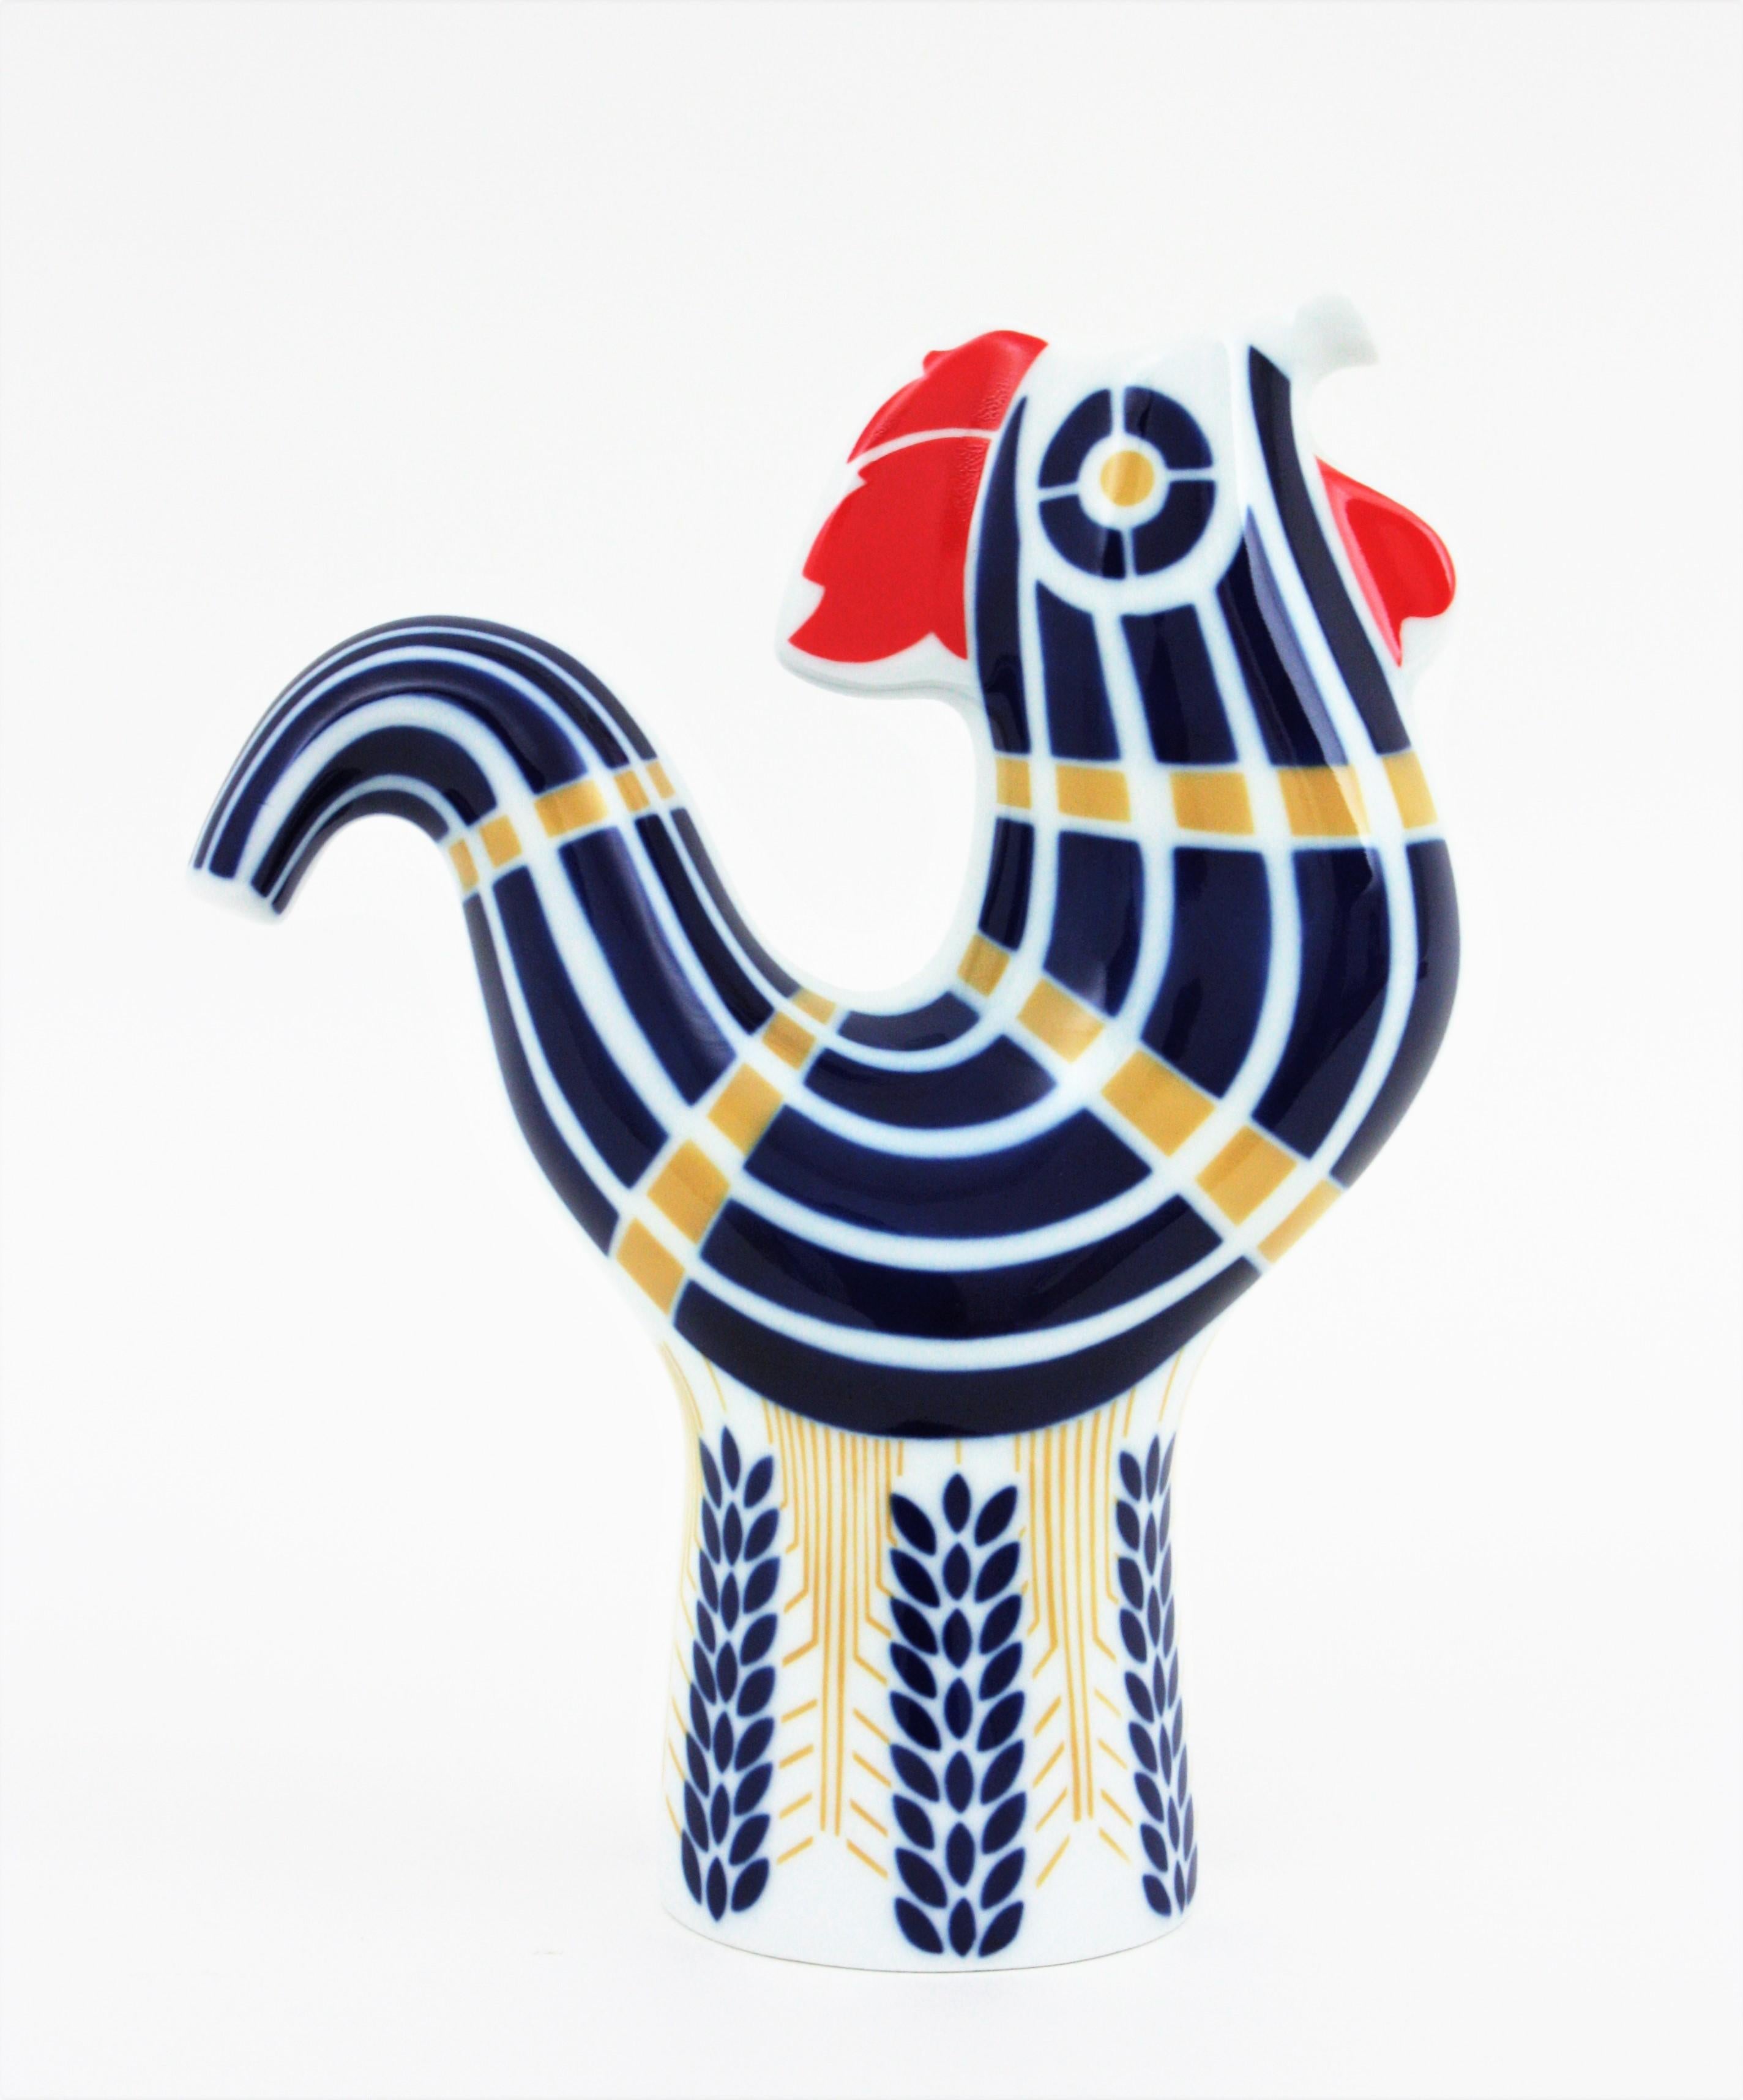 Vase / pichet à coq en porcelaine, Sargadelos, Espagne, années 1950-1960.
Vase-pichet décoratif du milieu du siècle en forme de coq en porcelaine blanche et bleu cobalt avec des accents dorés et rouges.
Utilisez-le comme vase décoratif ou comme